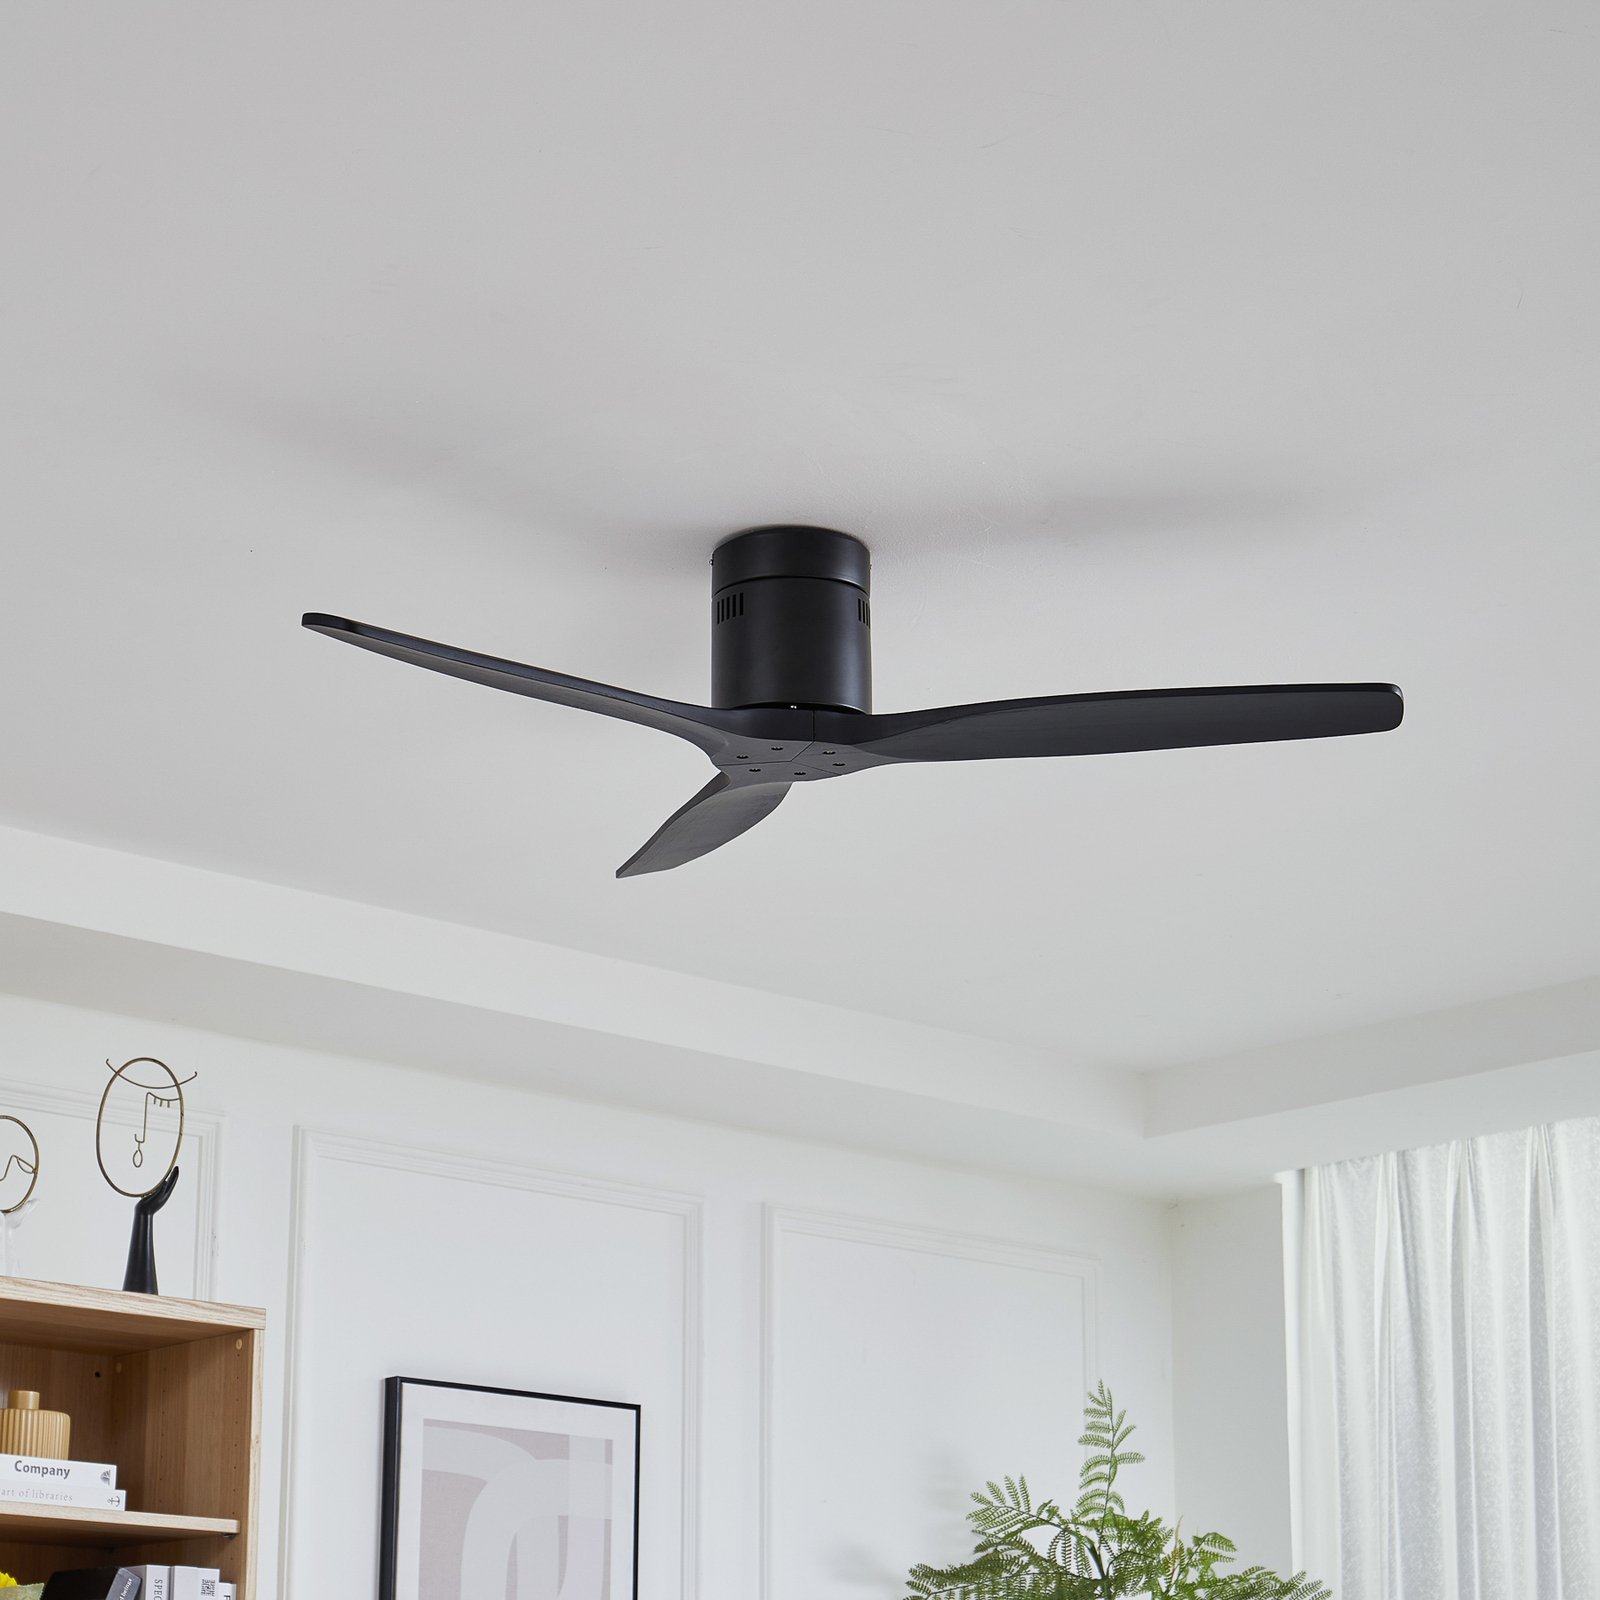 Lucande mennyezeti ventilátor Vindur, fekete, egyenáramú, csendes, 132 cm